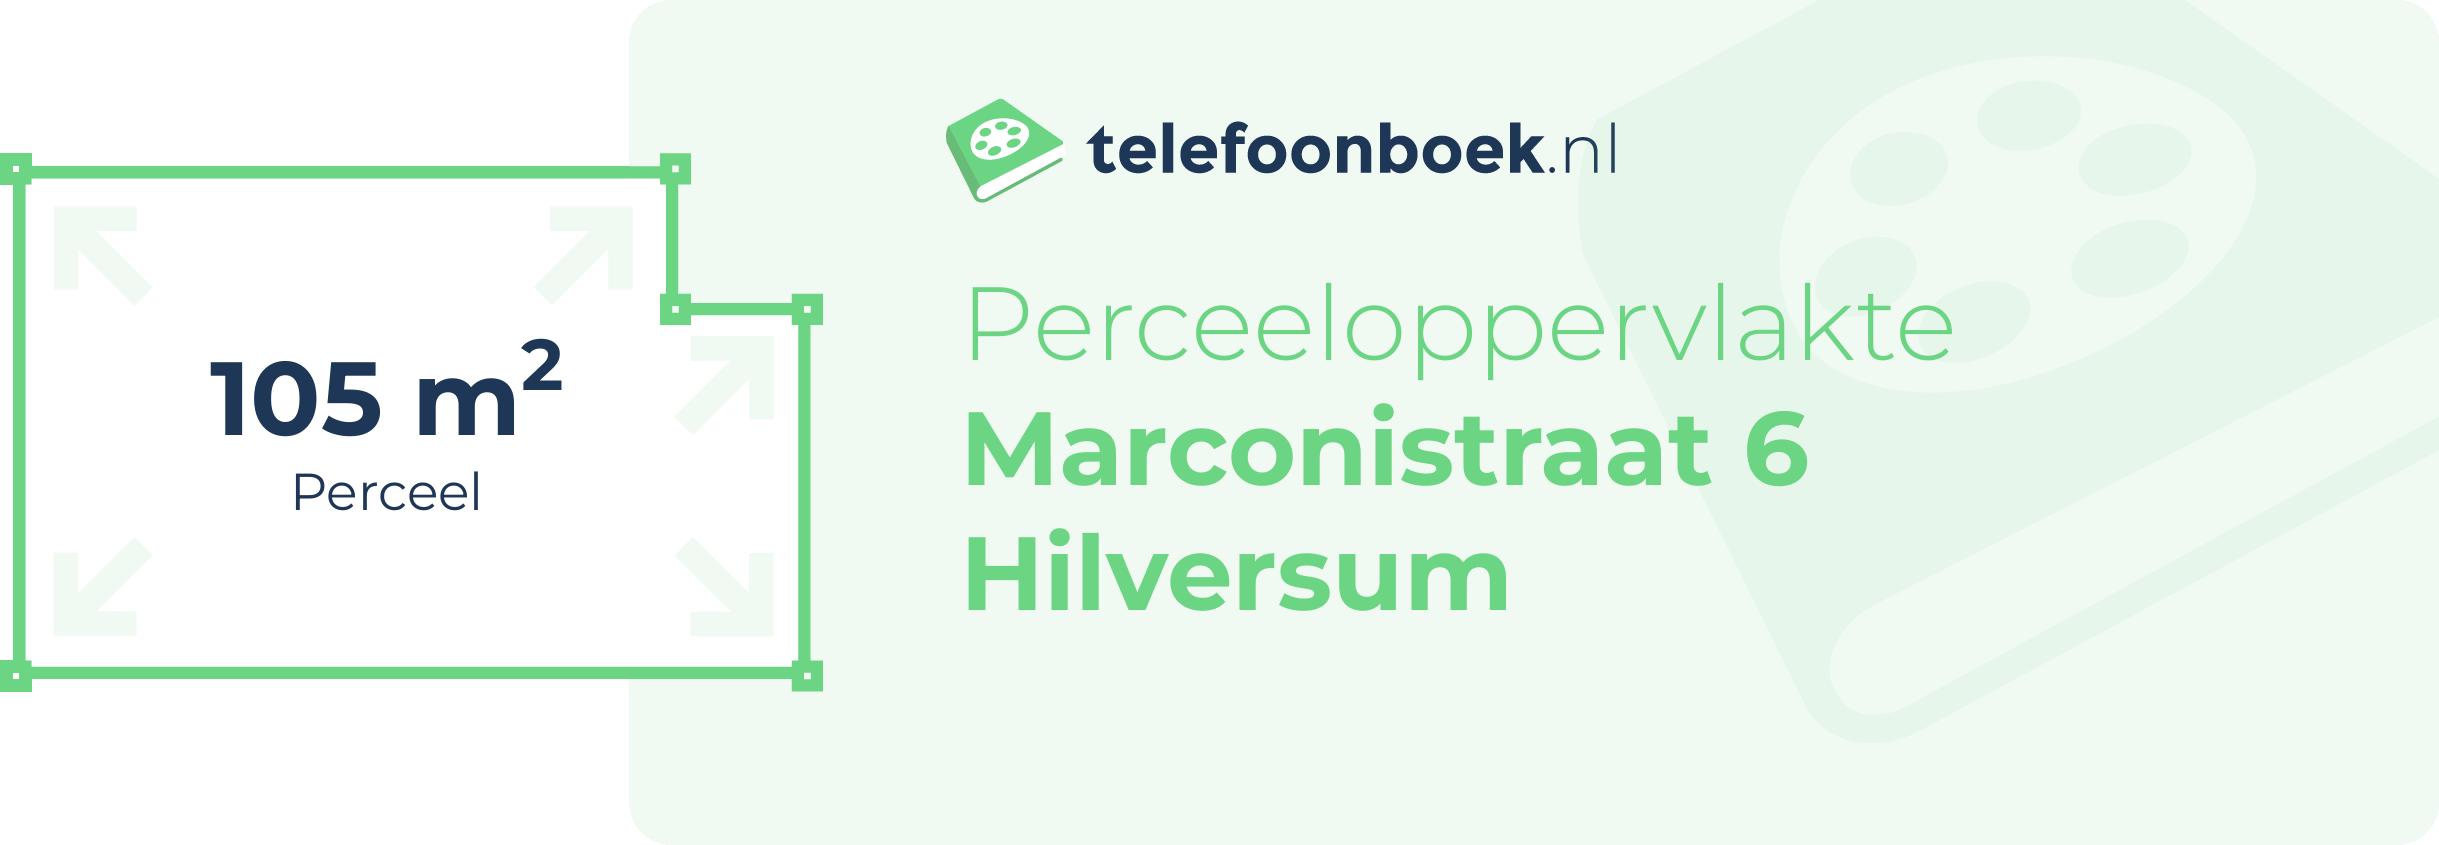 Perceeloppervlakte Marconistraat 6 Hilversum